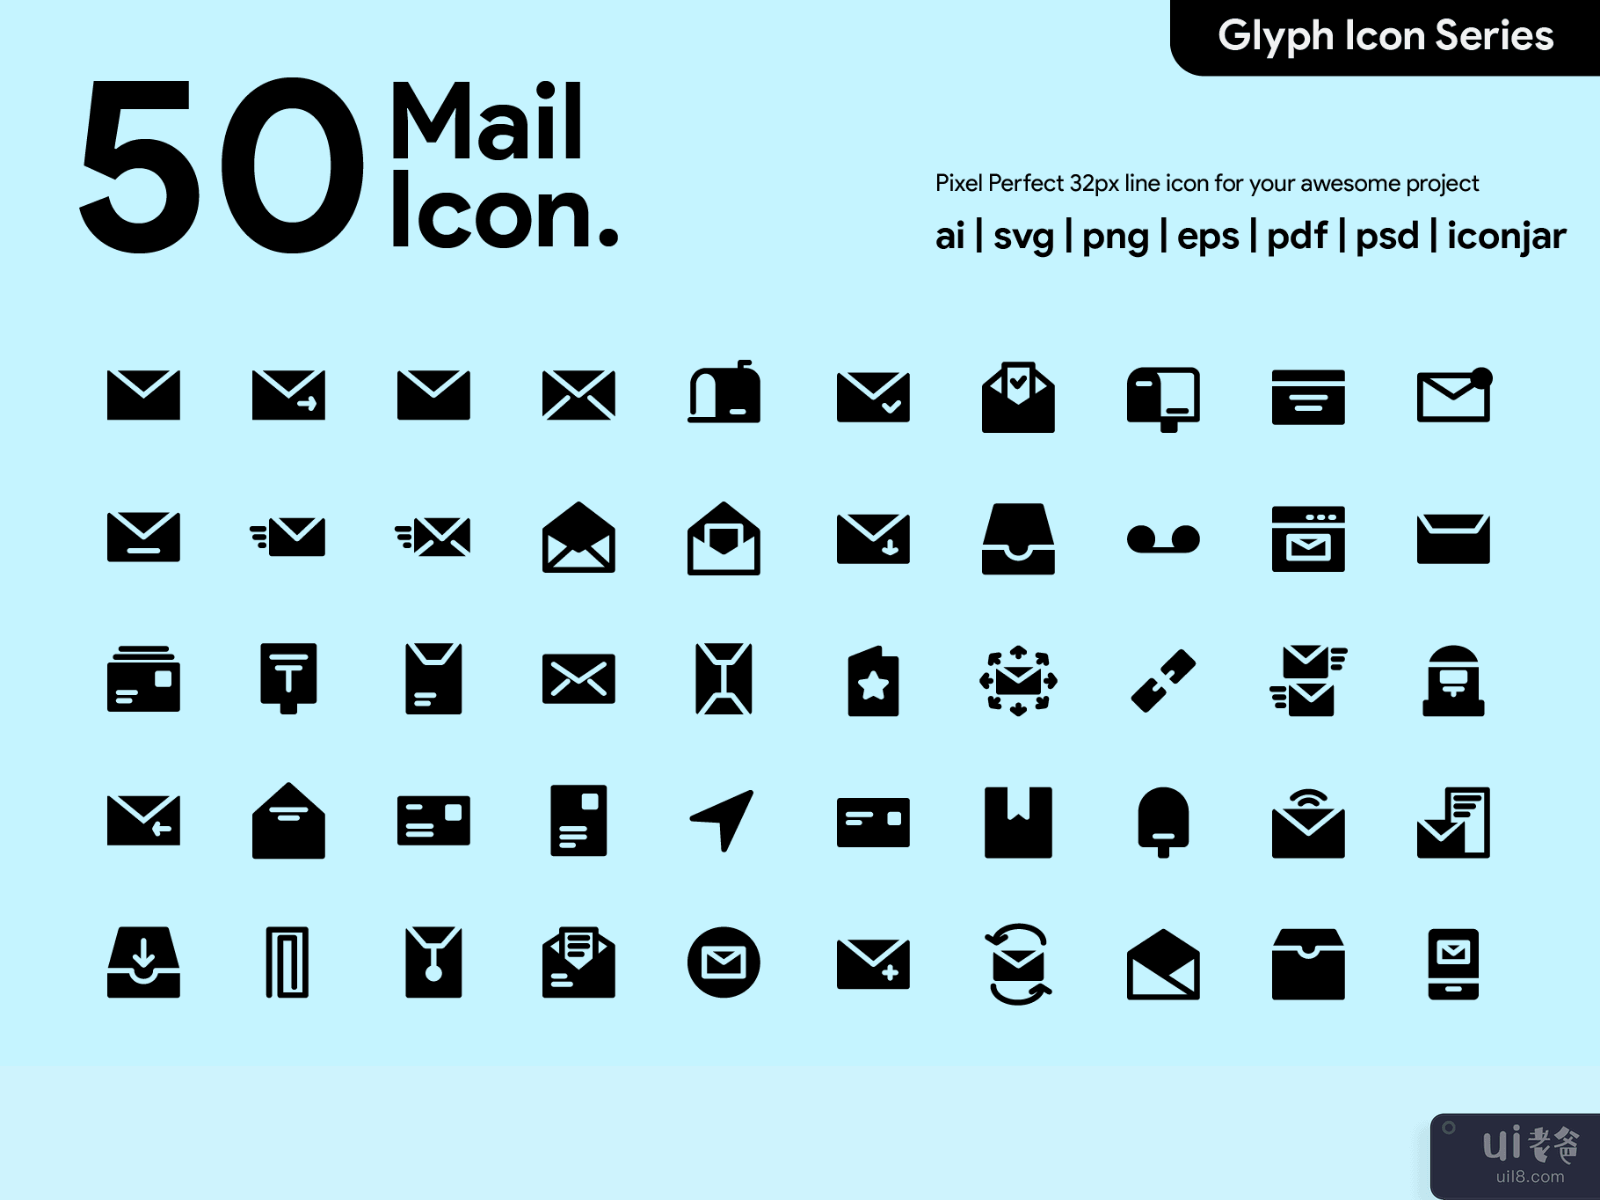 Kawaicon - 50 Mail Glyph Icon Set